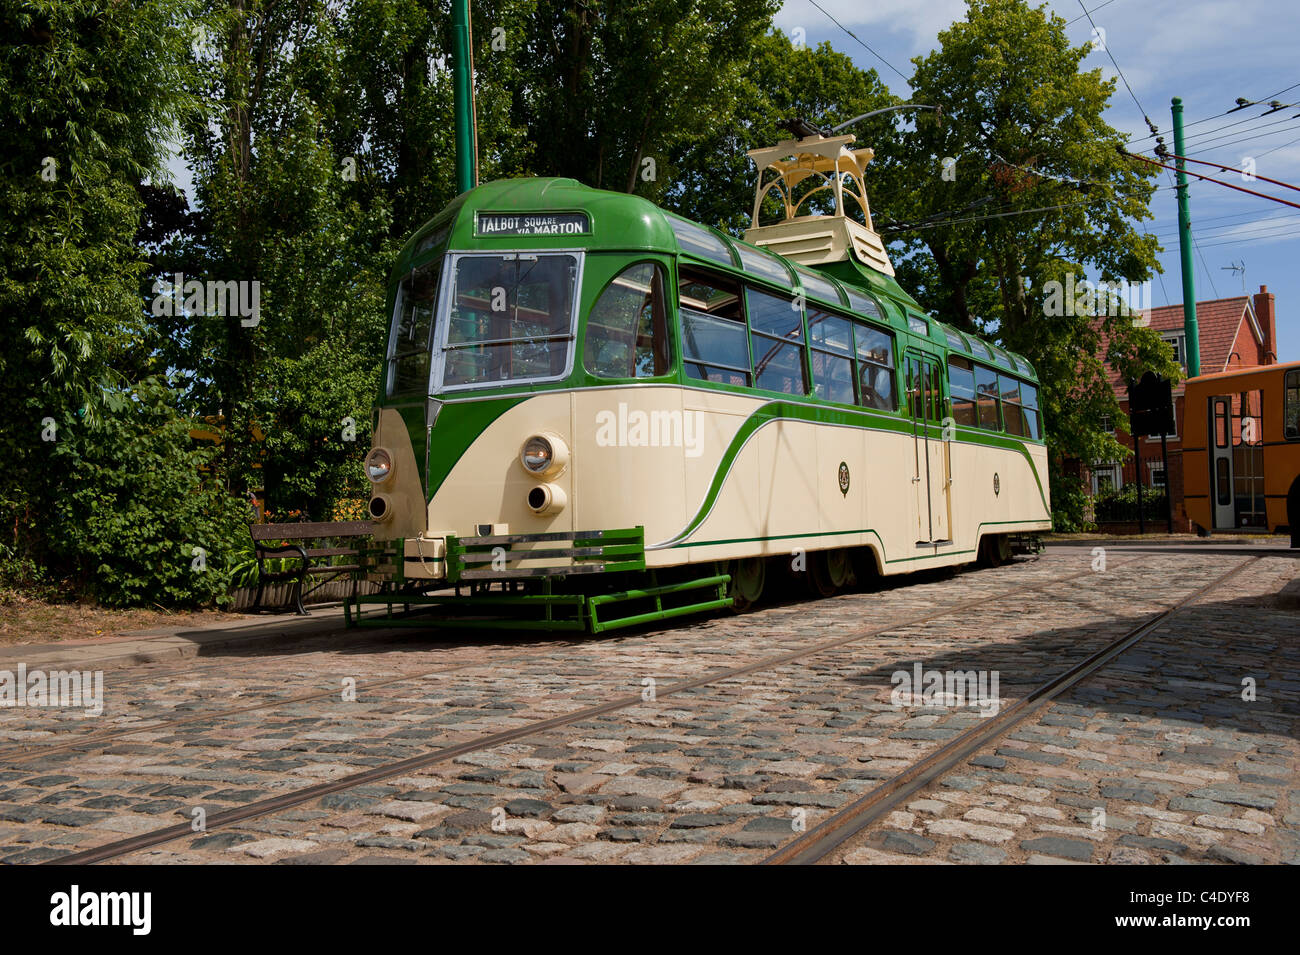 Vintage Electric tram at Transport Museum UK vintage transport Stock Photo